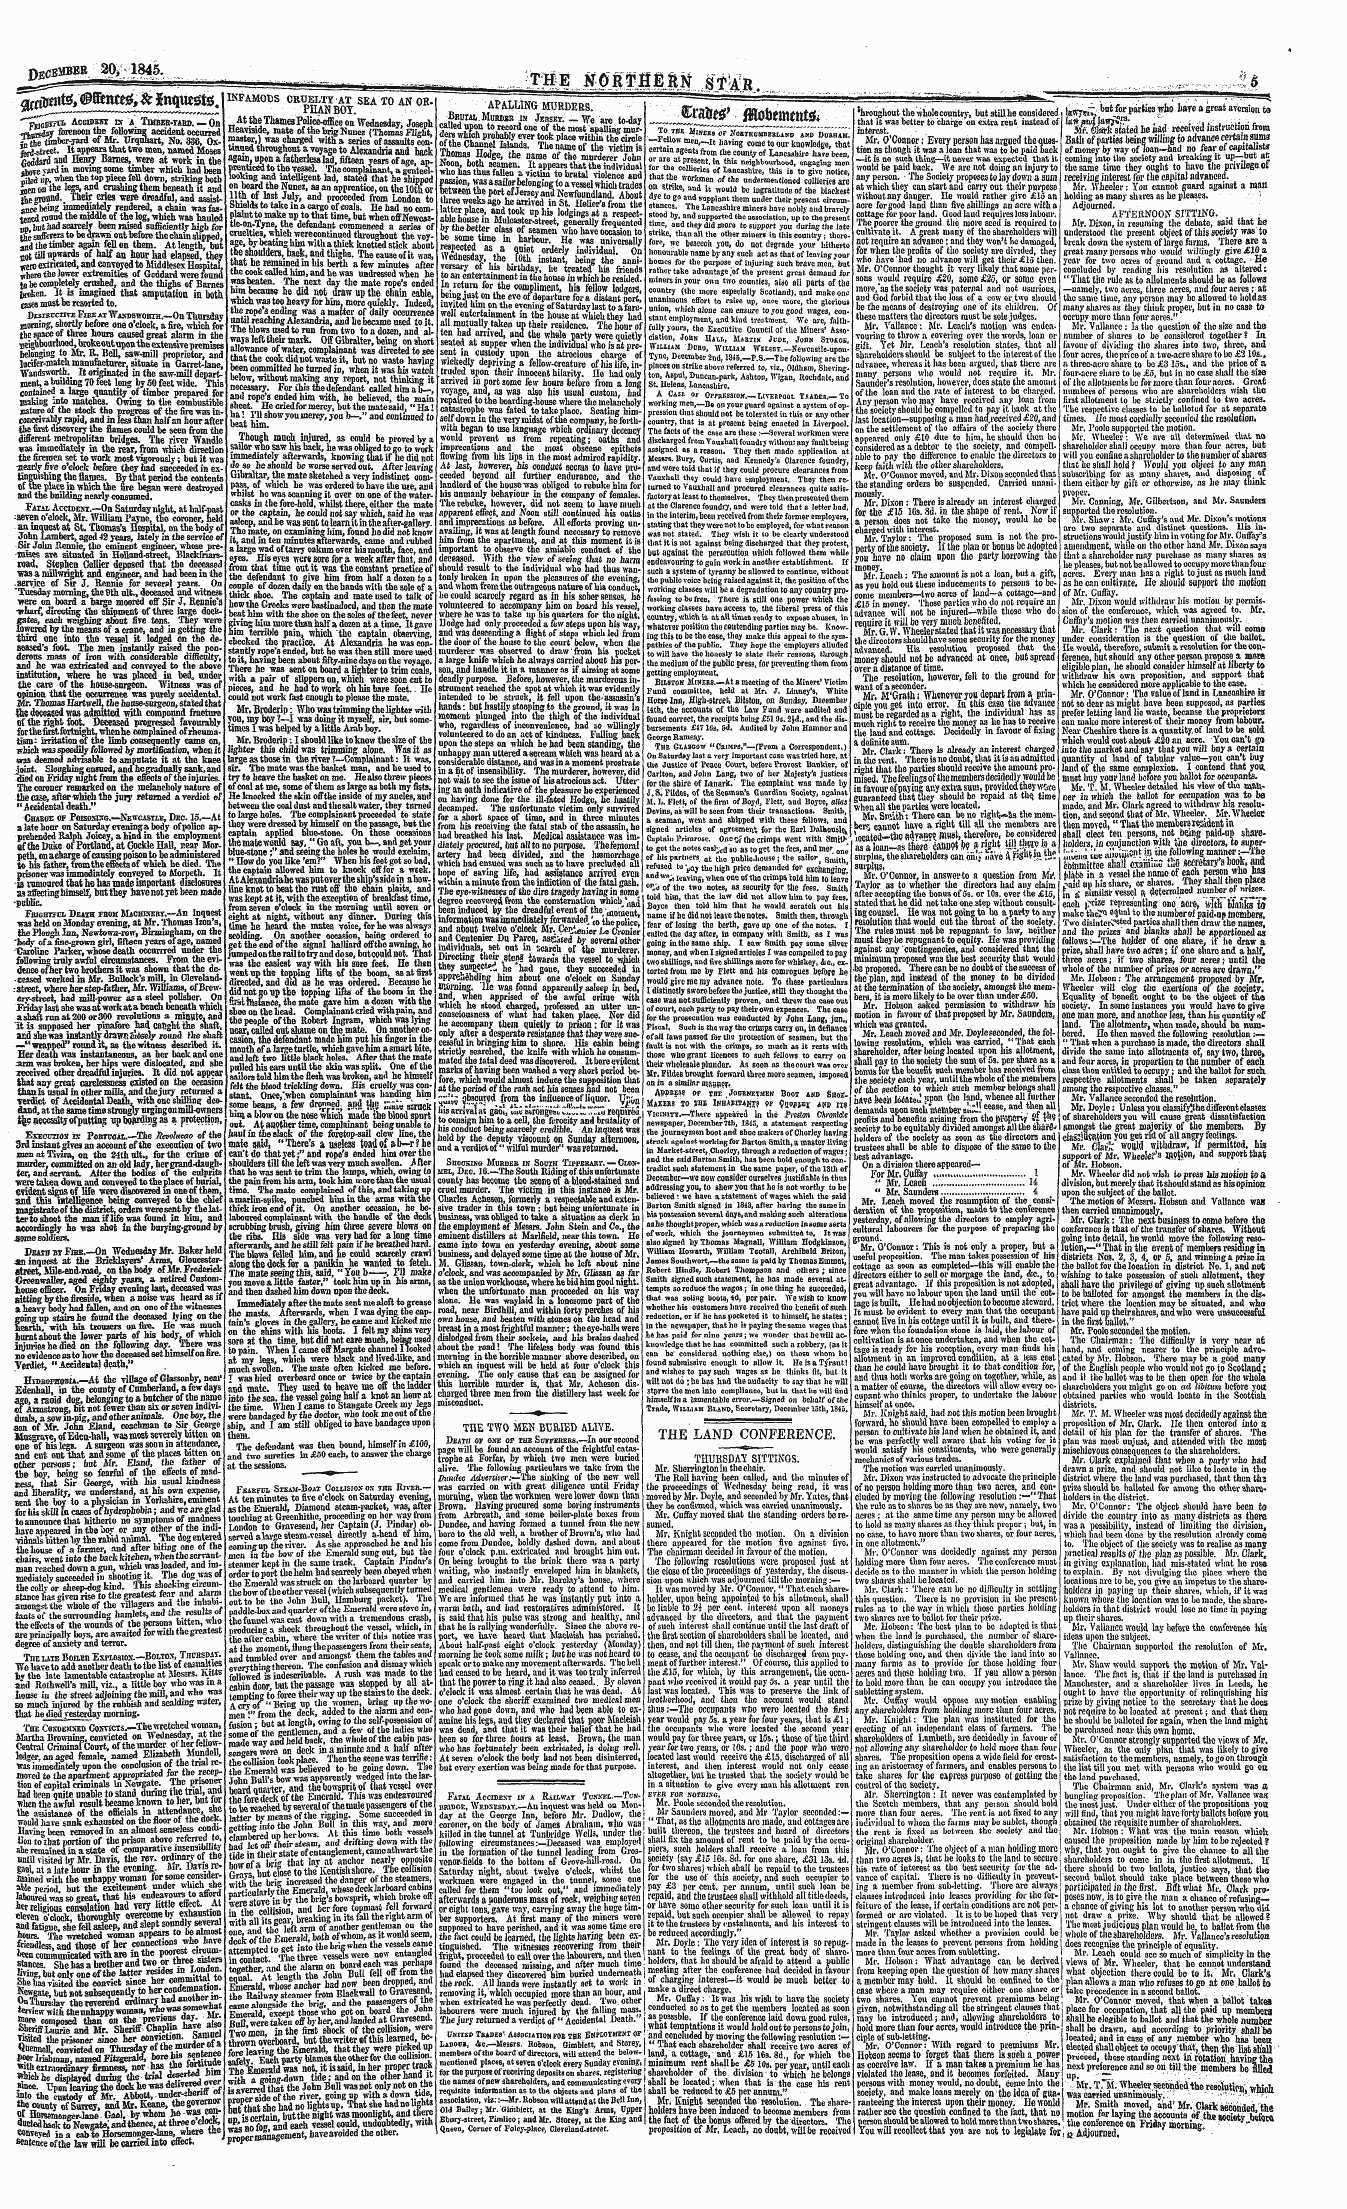 Northern Star (1837-1852): jS F Y, 4th edition - — ¦- ¦*¦ ' »_. _ ¦ ¦ •.. ~ « Y R I . Inf...